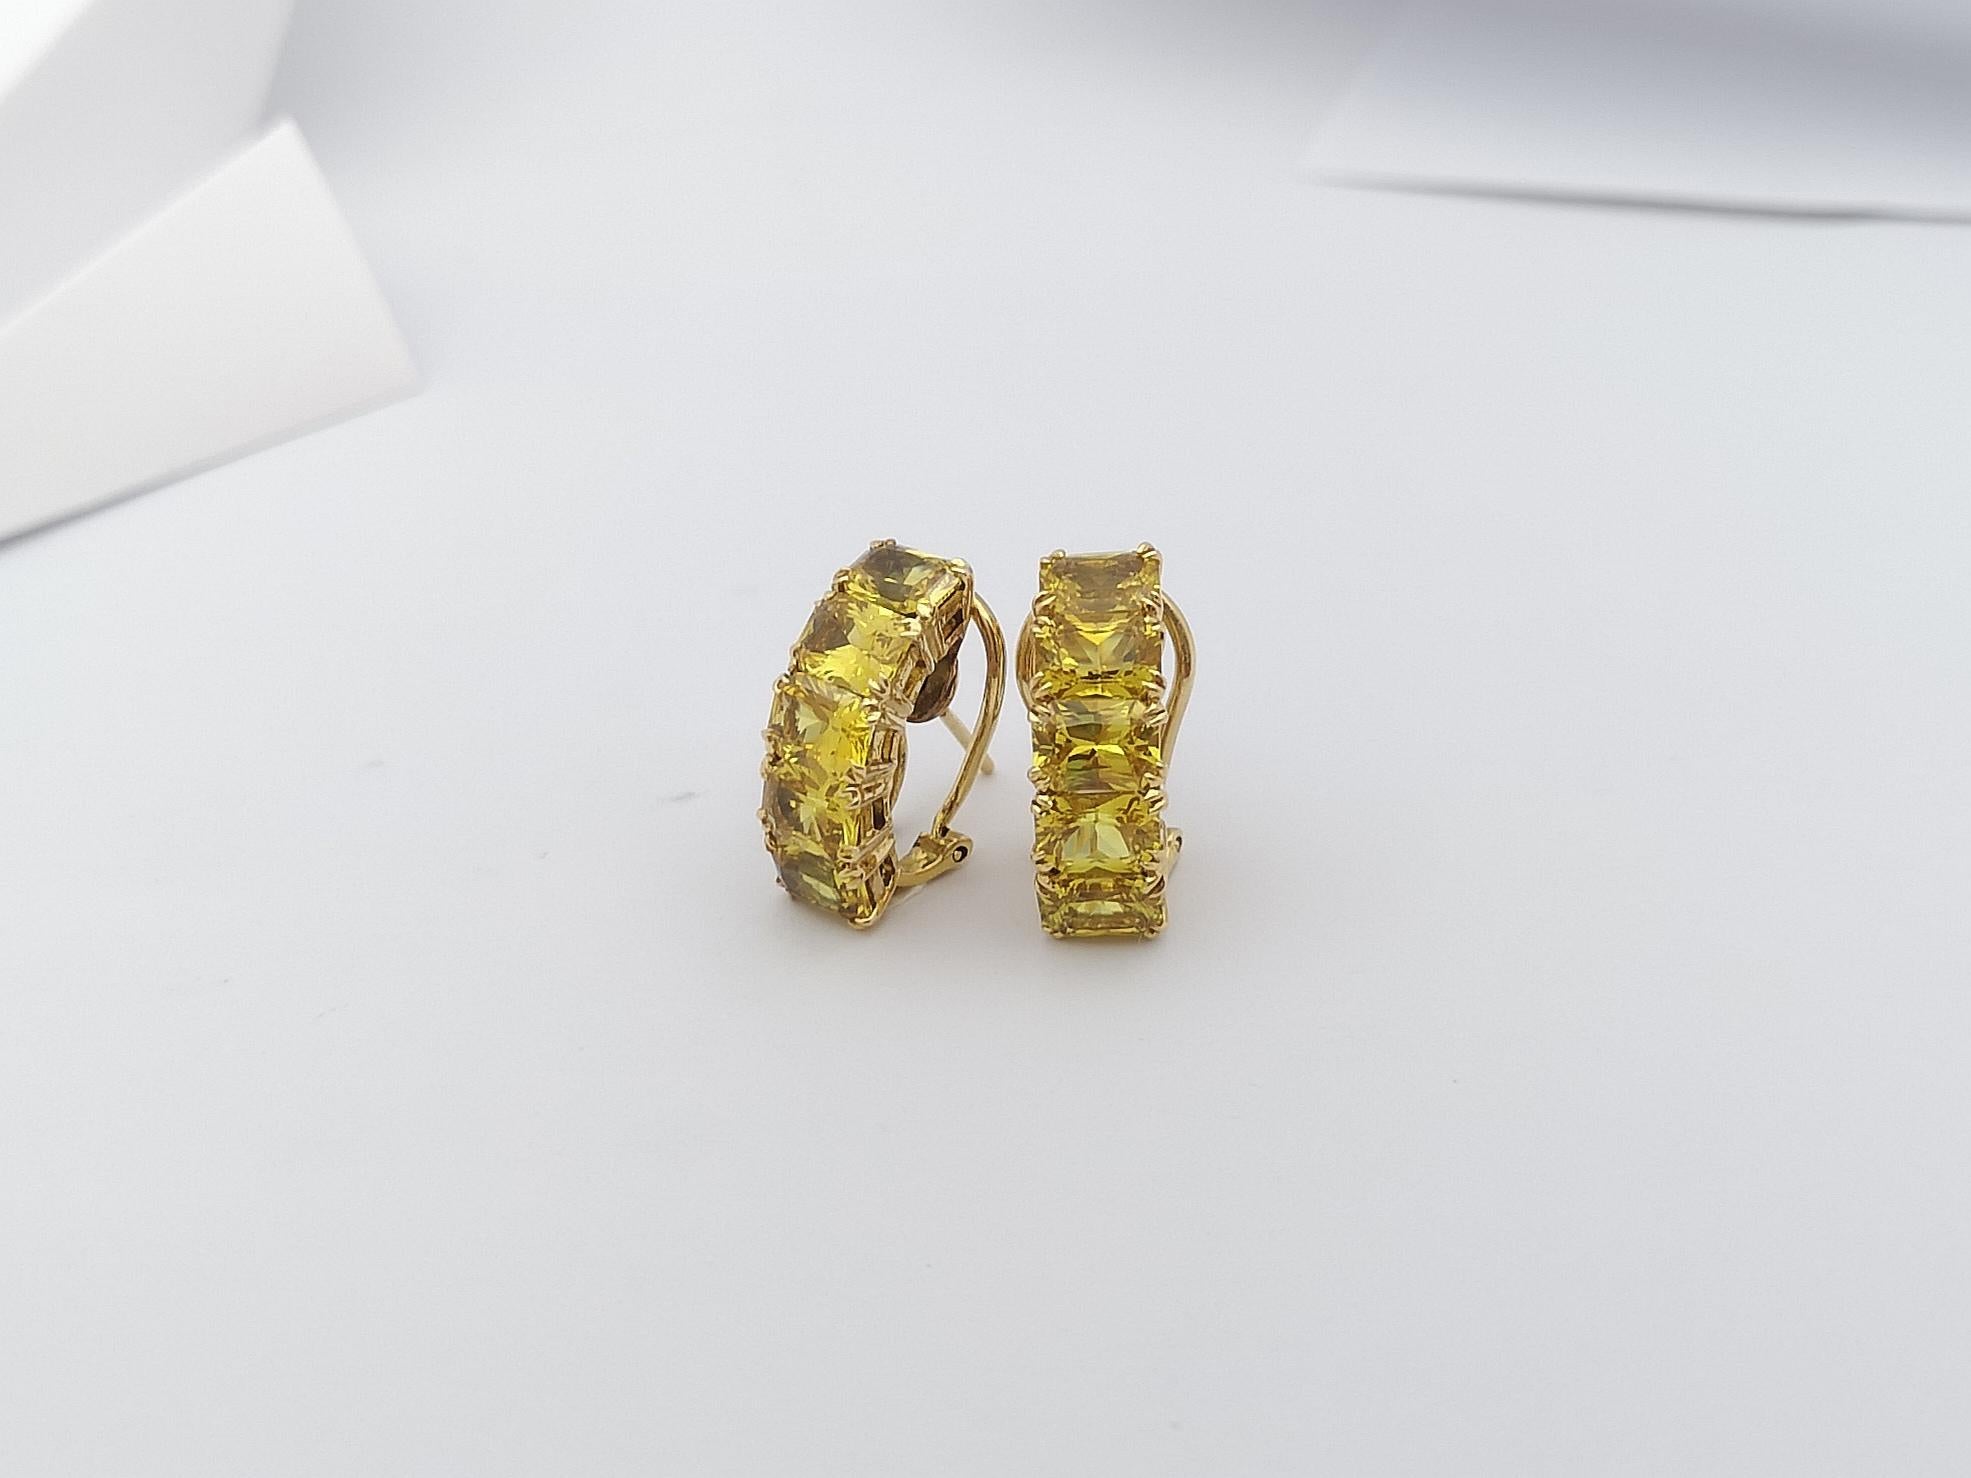 Emerald Cut Yellow Sapphire Earrings set in 18 Karat Gold Settings For Sale